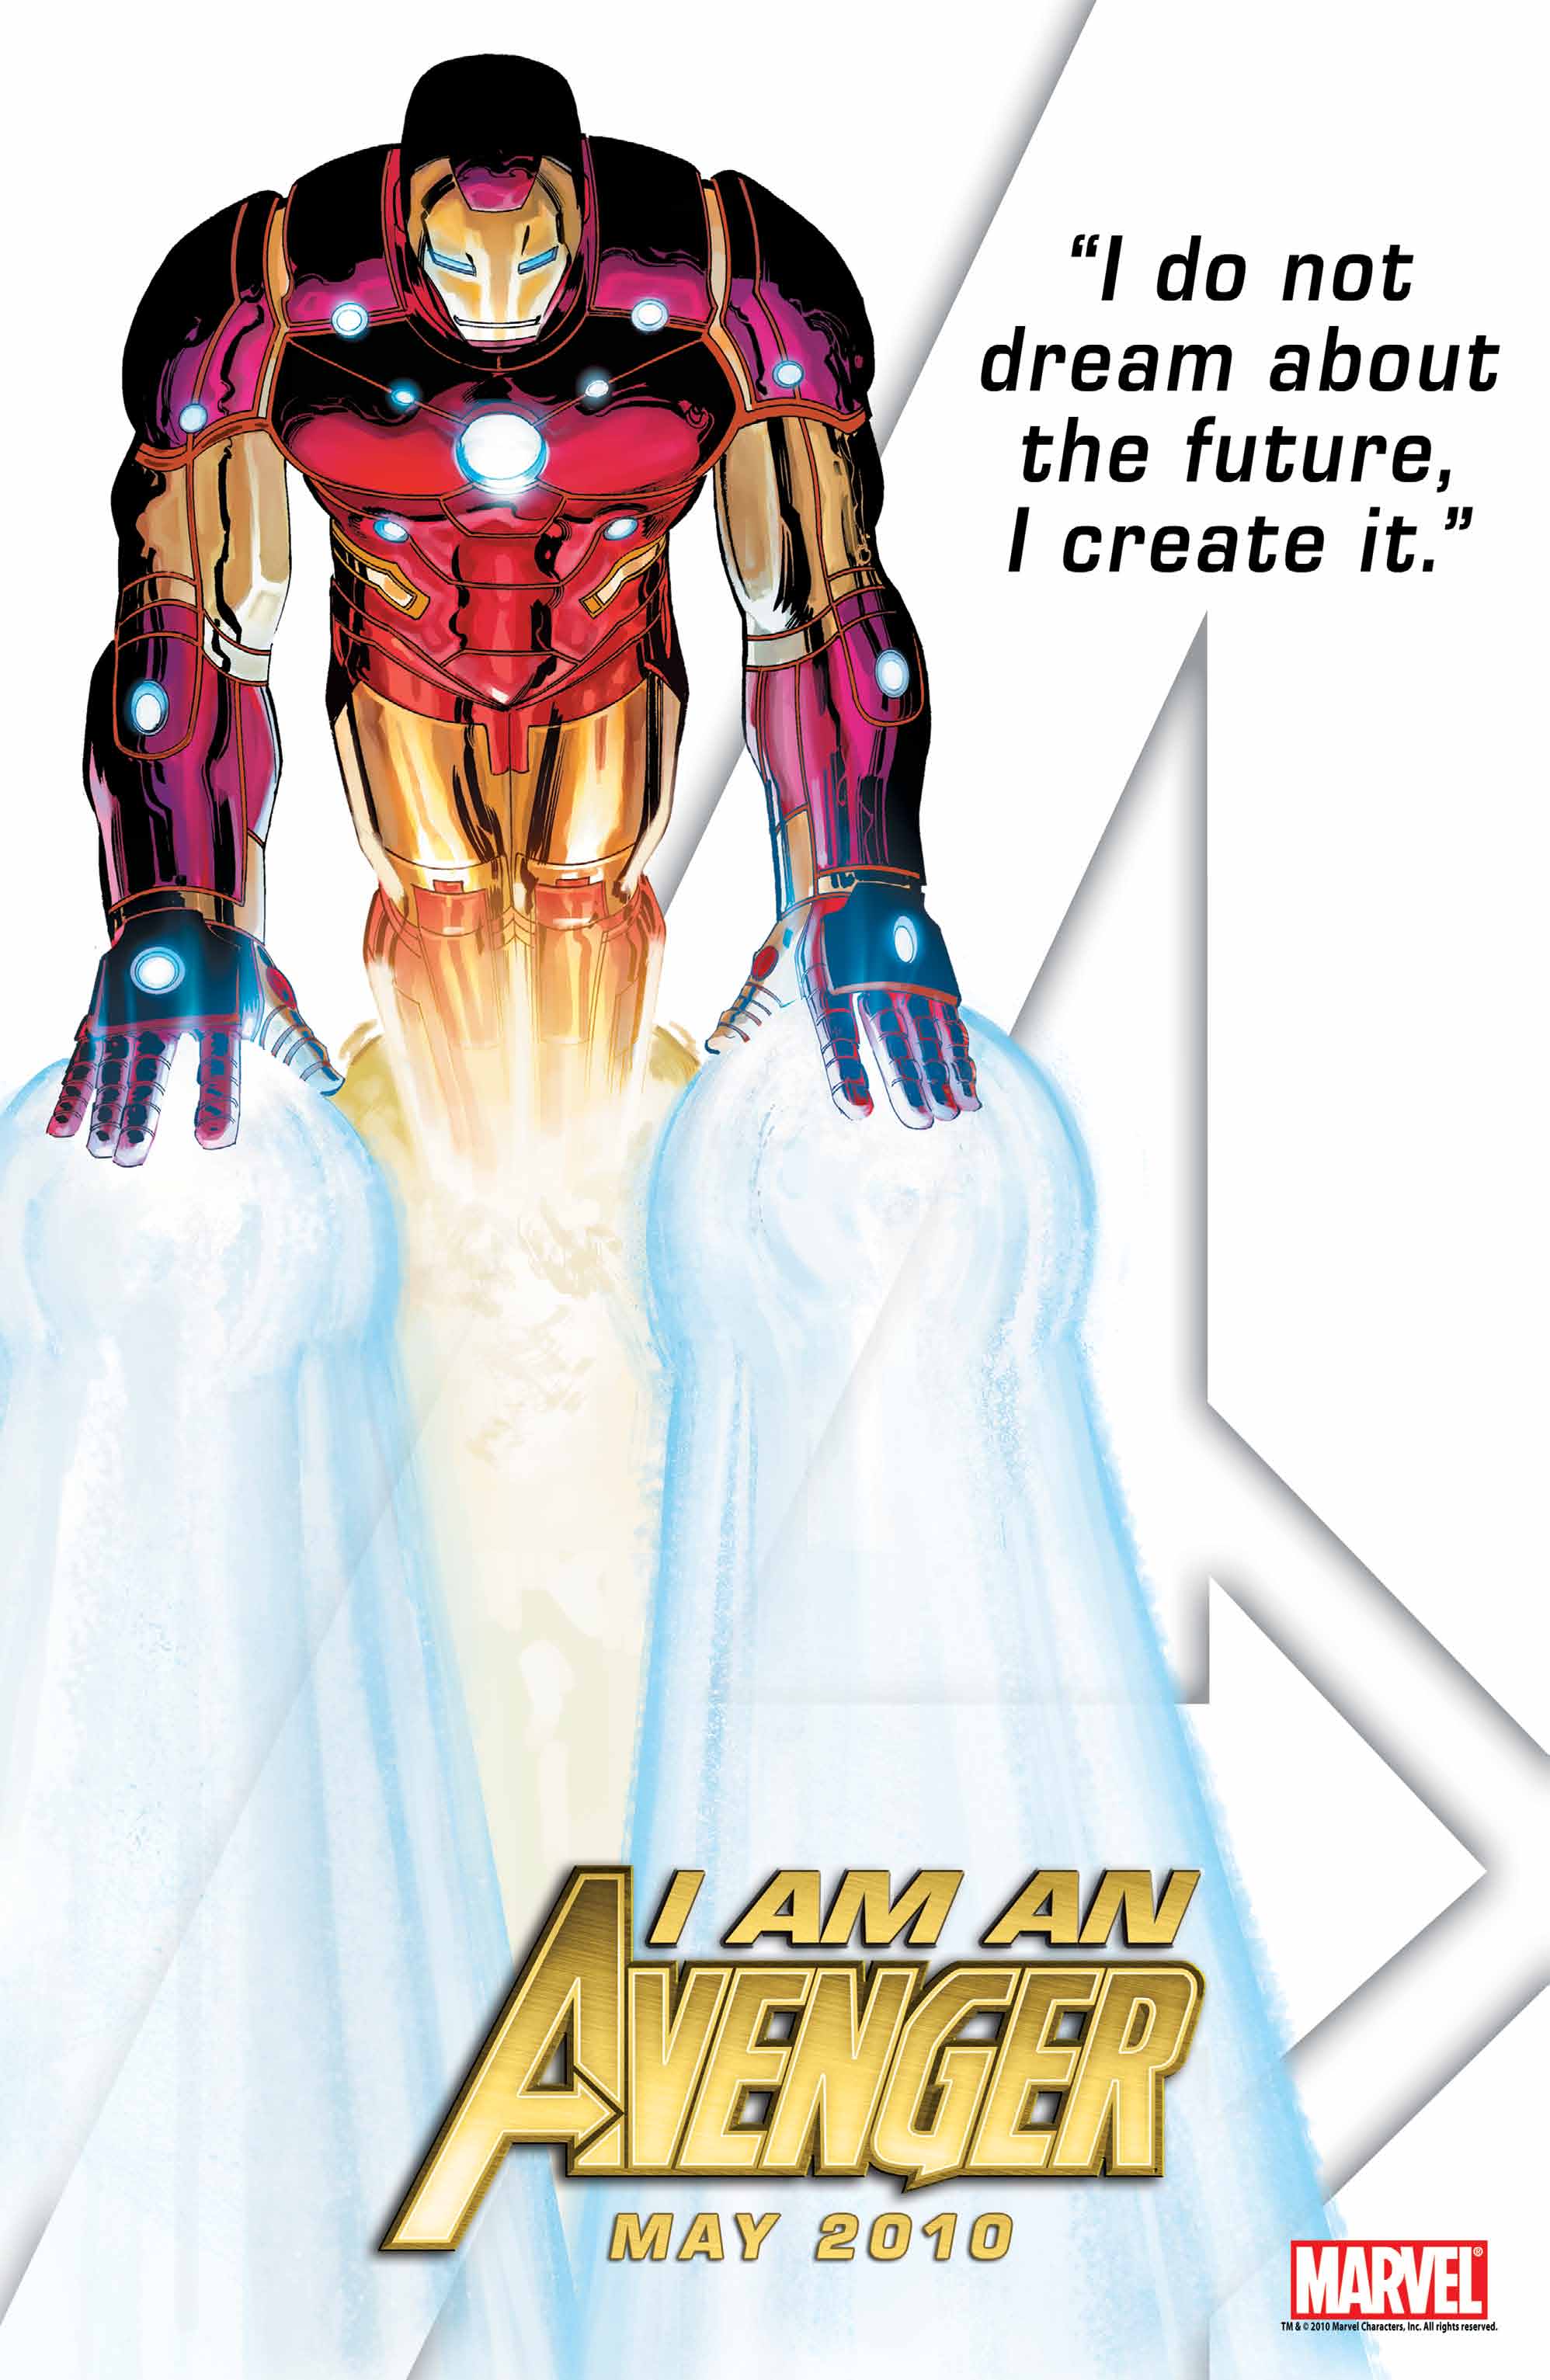 Железный Человек, Марвел комиксы - обои на рабочий стол